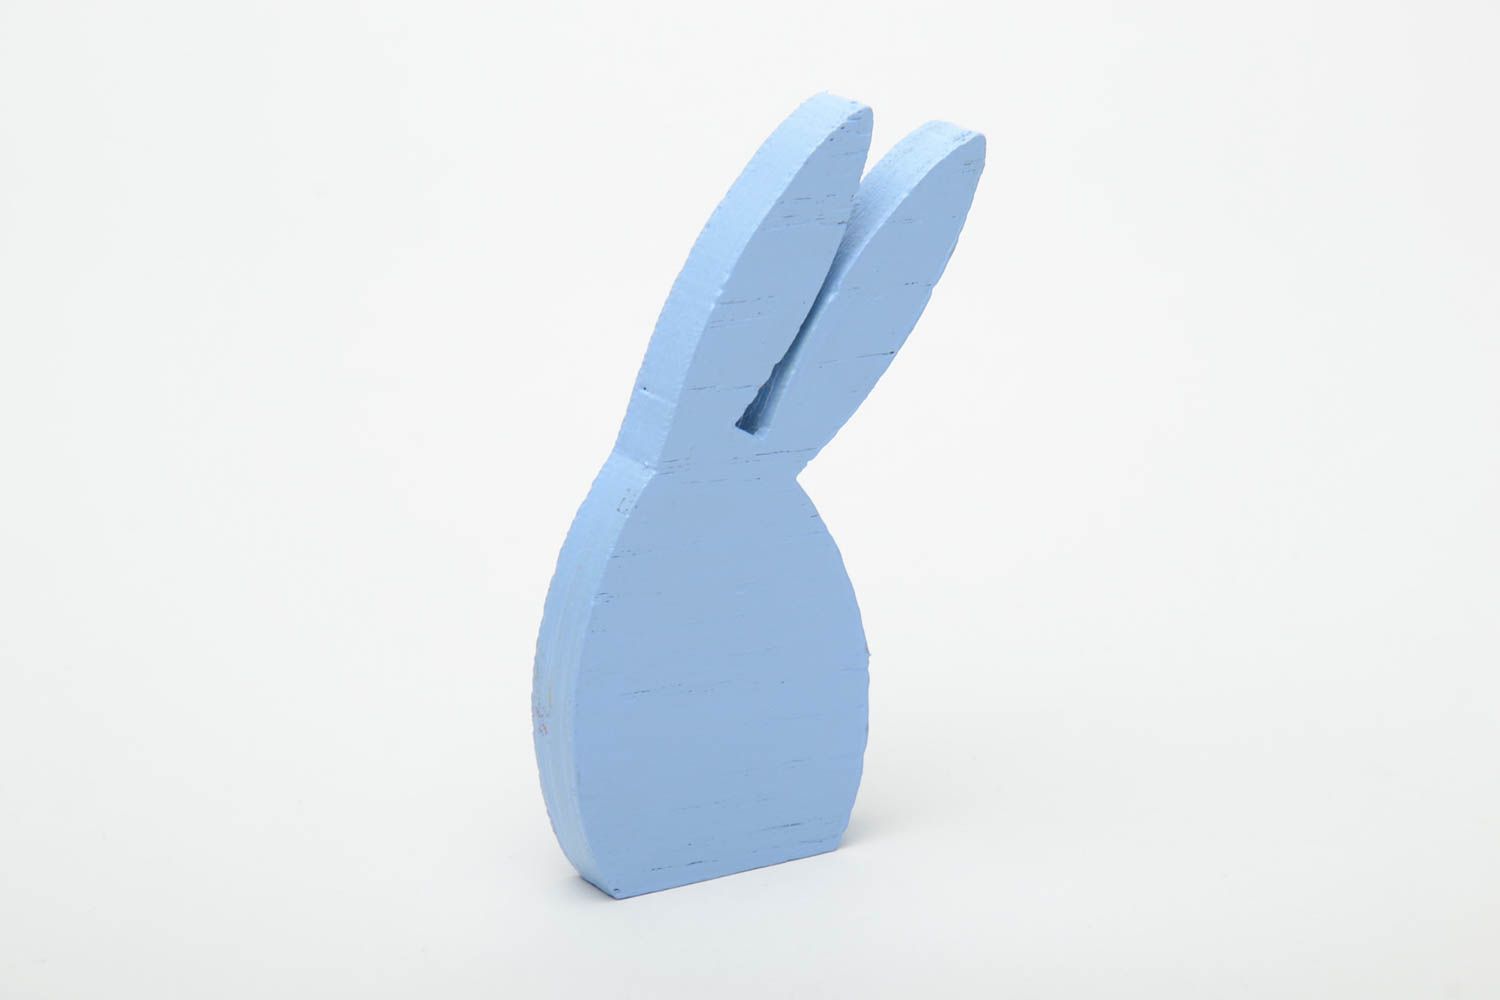 Статуэтка из фанеры расписная в виде голубого зайца фото 3